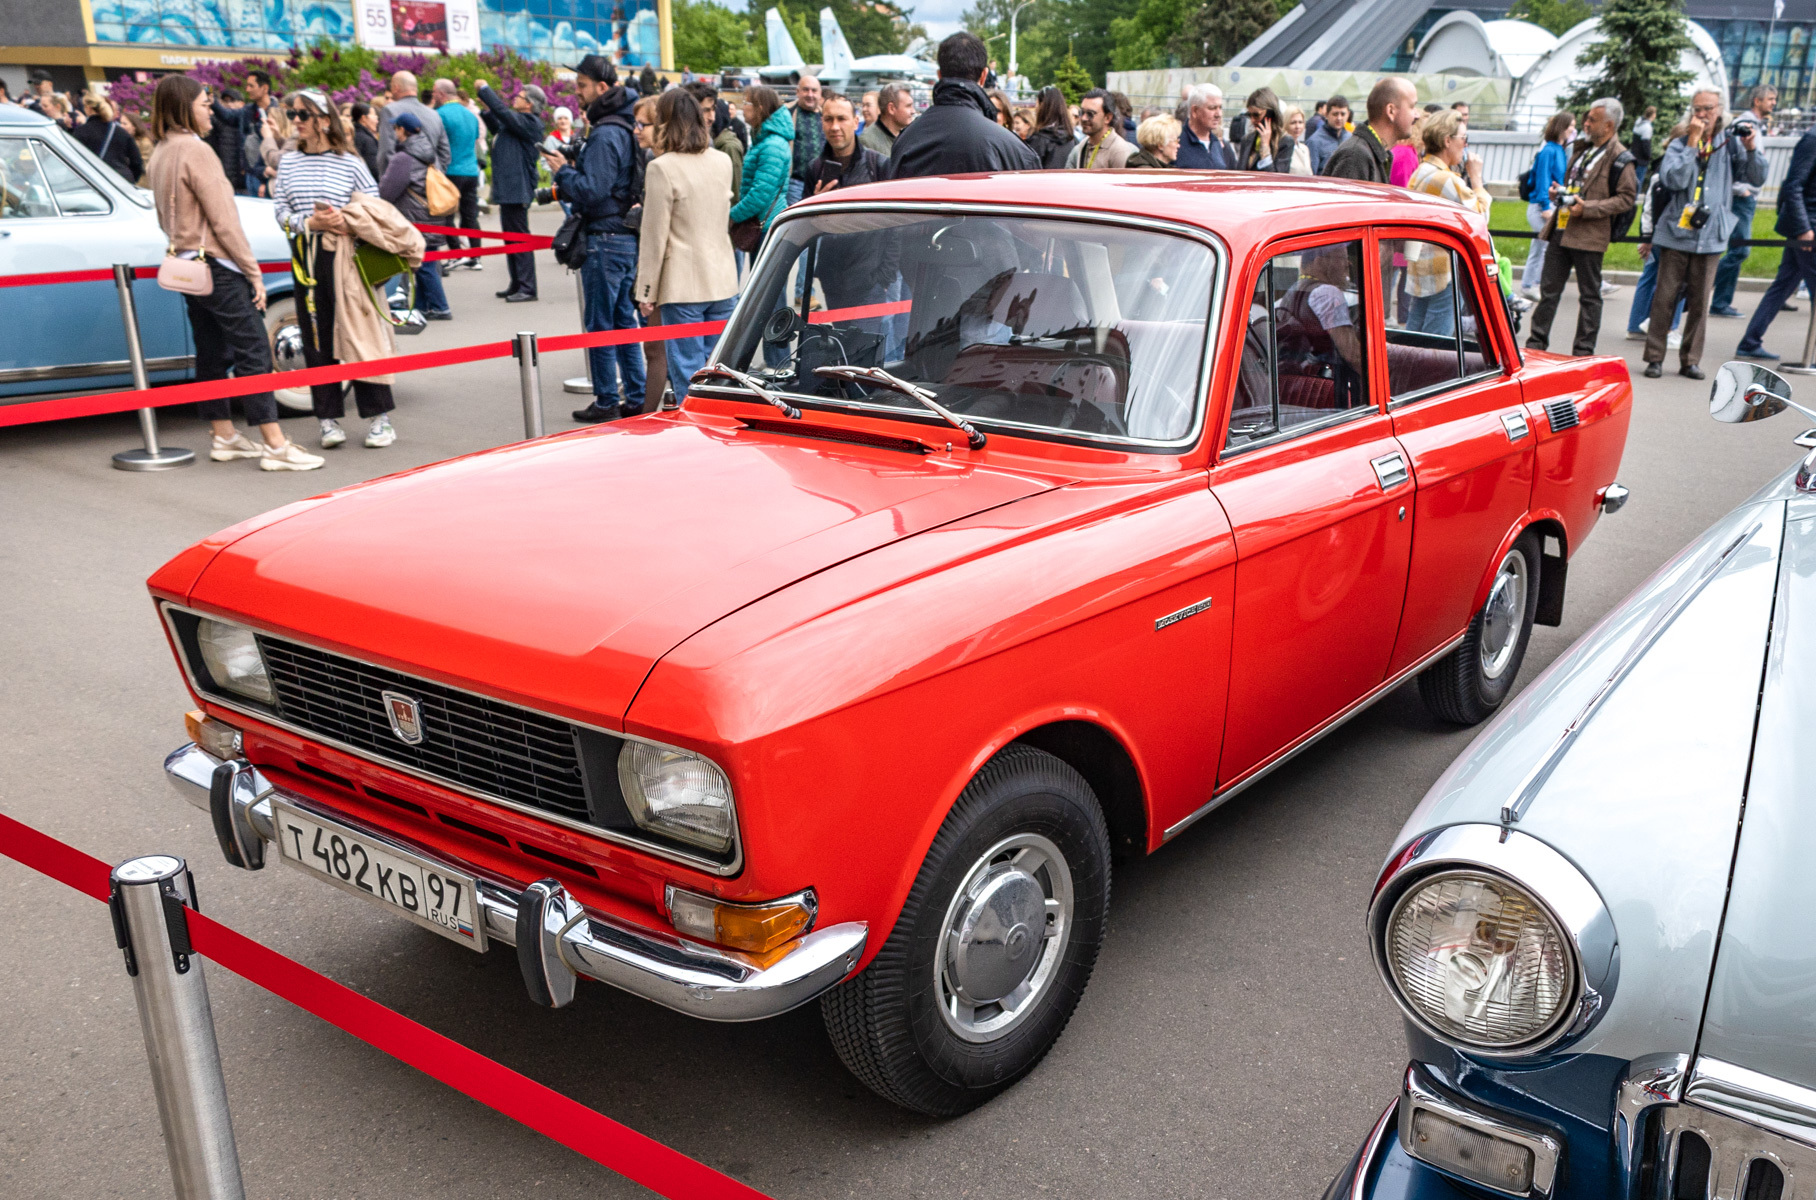 Работы над модернизацией модели Москвич-412 начались в 1973 году. Рестайлинговый седан с двигателем УЗАМ-412 как раз и получил название Москвич-2140.